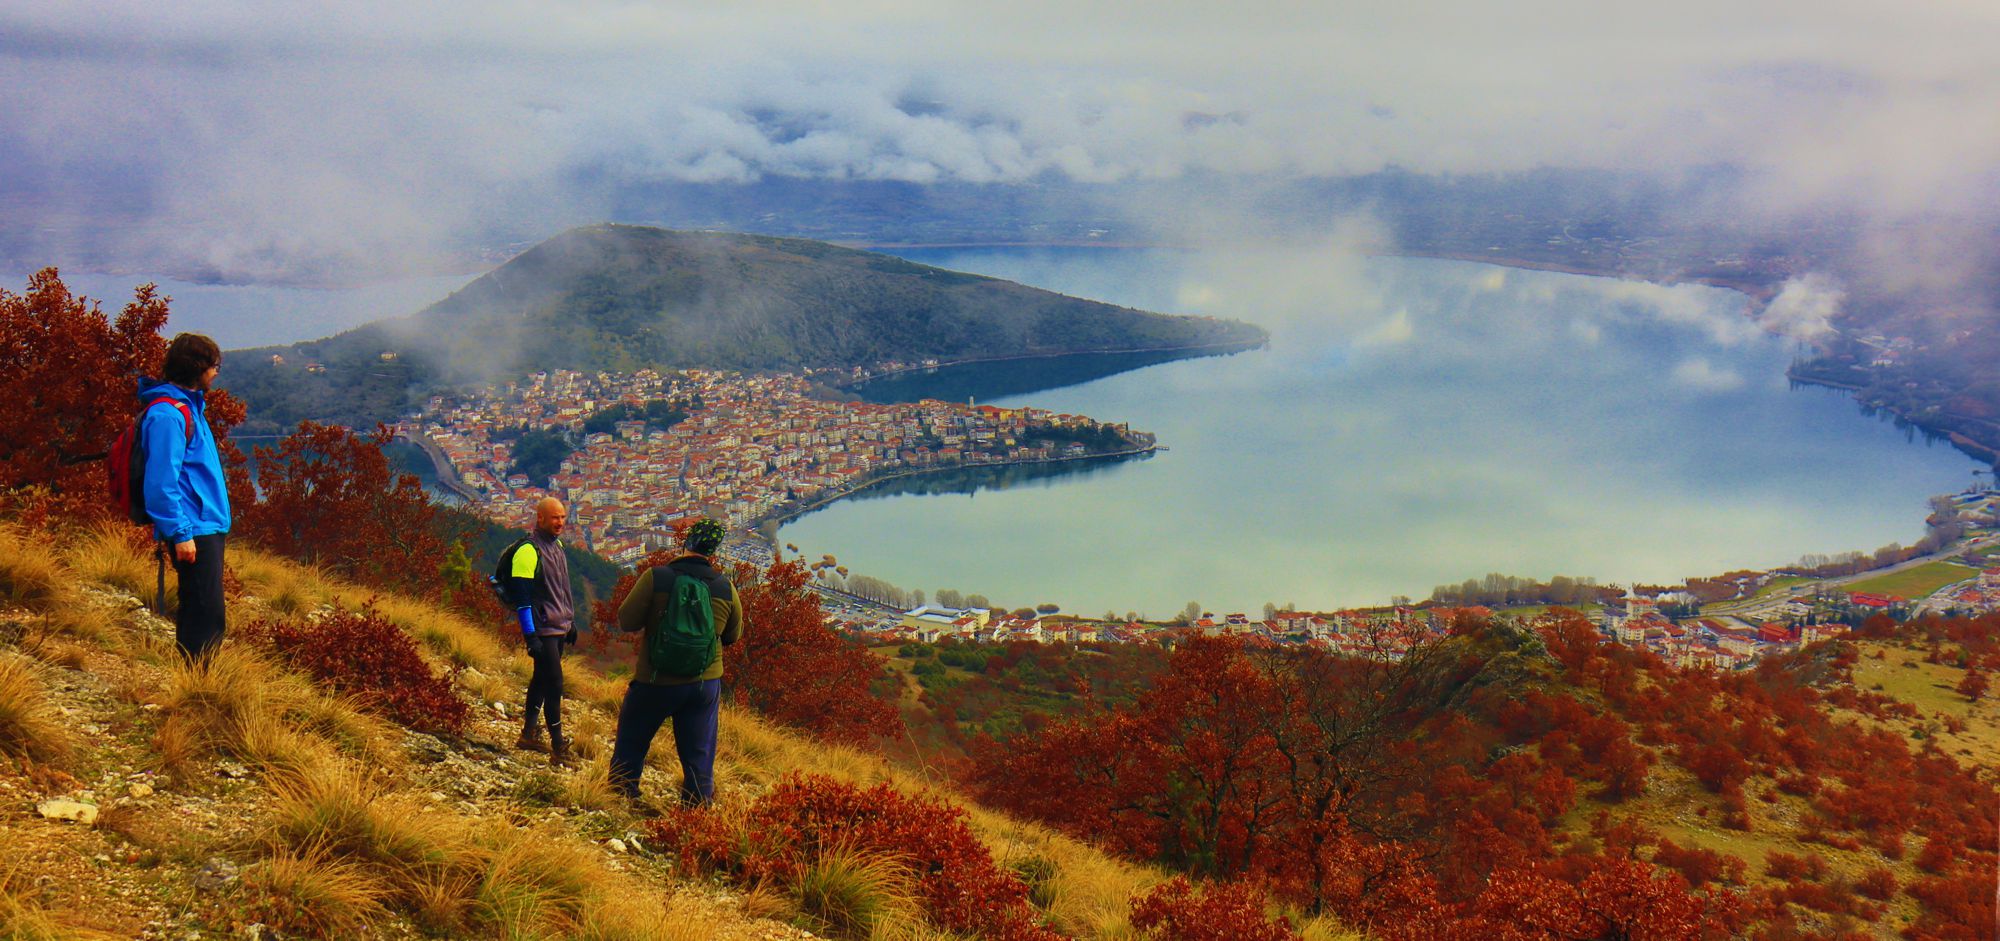 Τα μονοπάτια της Ψαλίδας: στο Μπλε μονοπάτι, με θέα την Καστοριά και τη λίμνη της